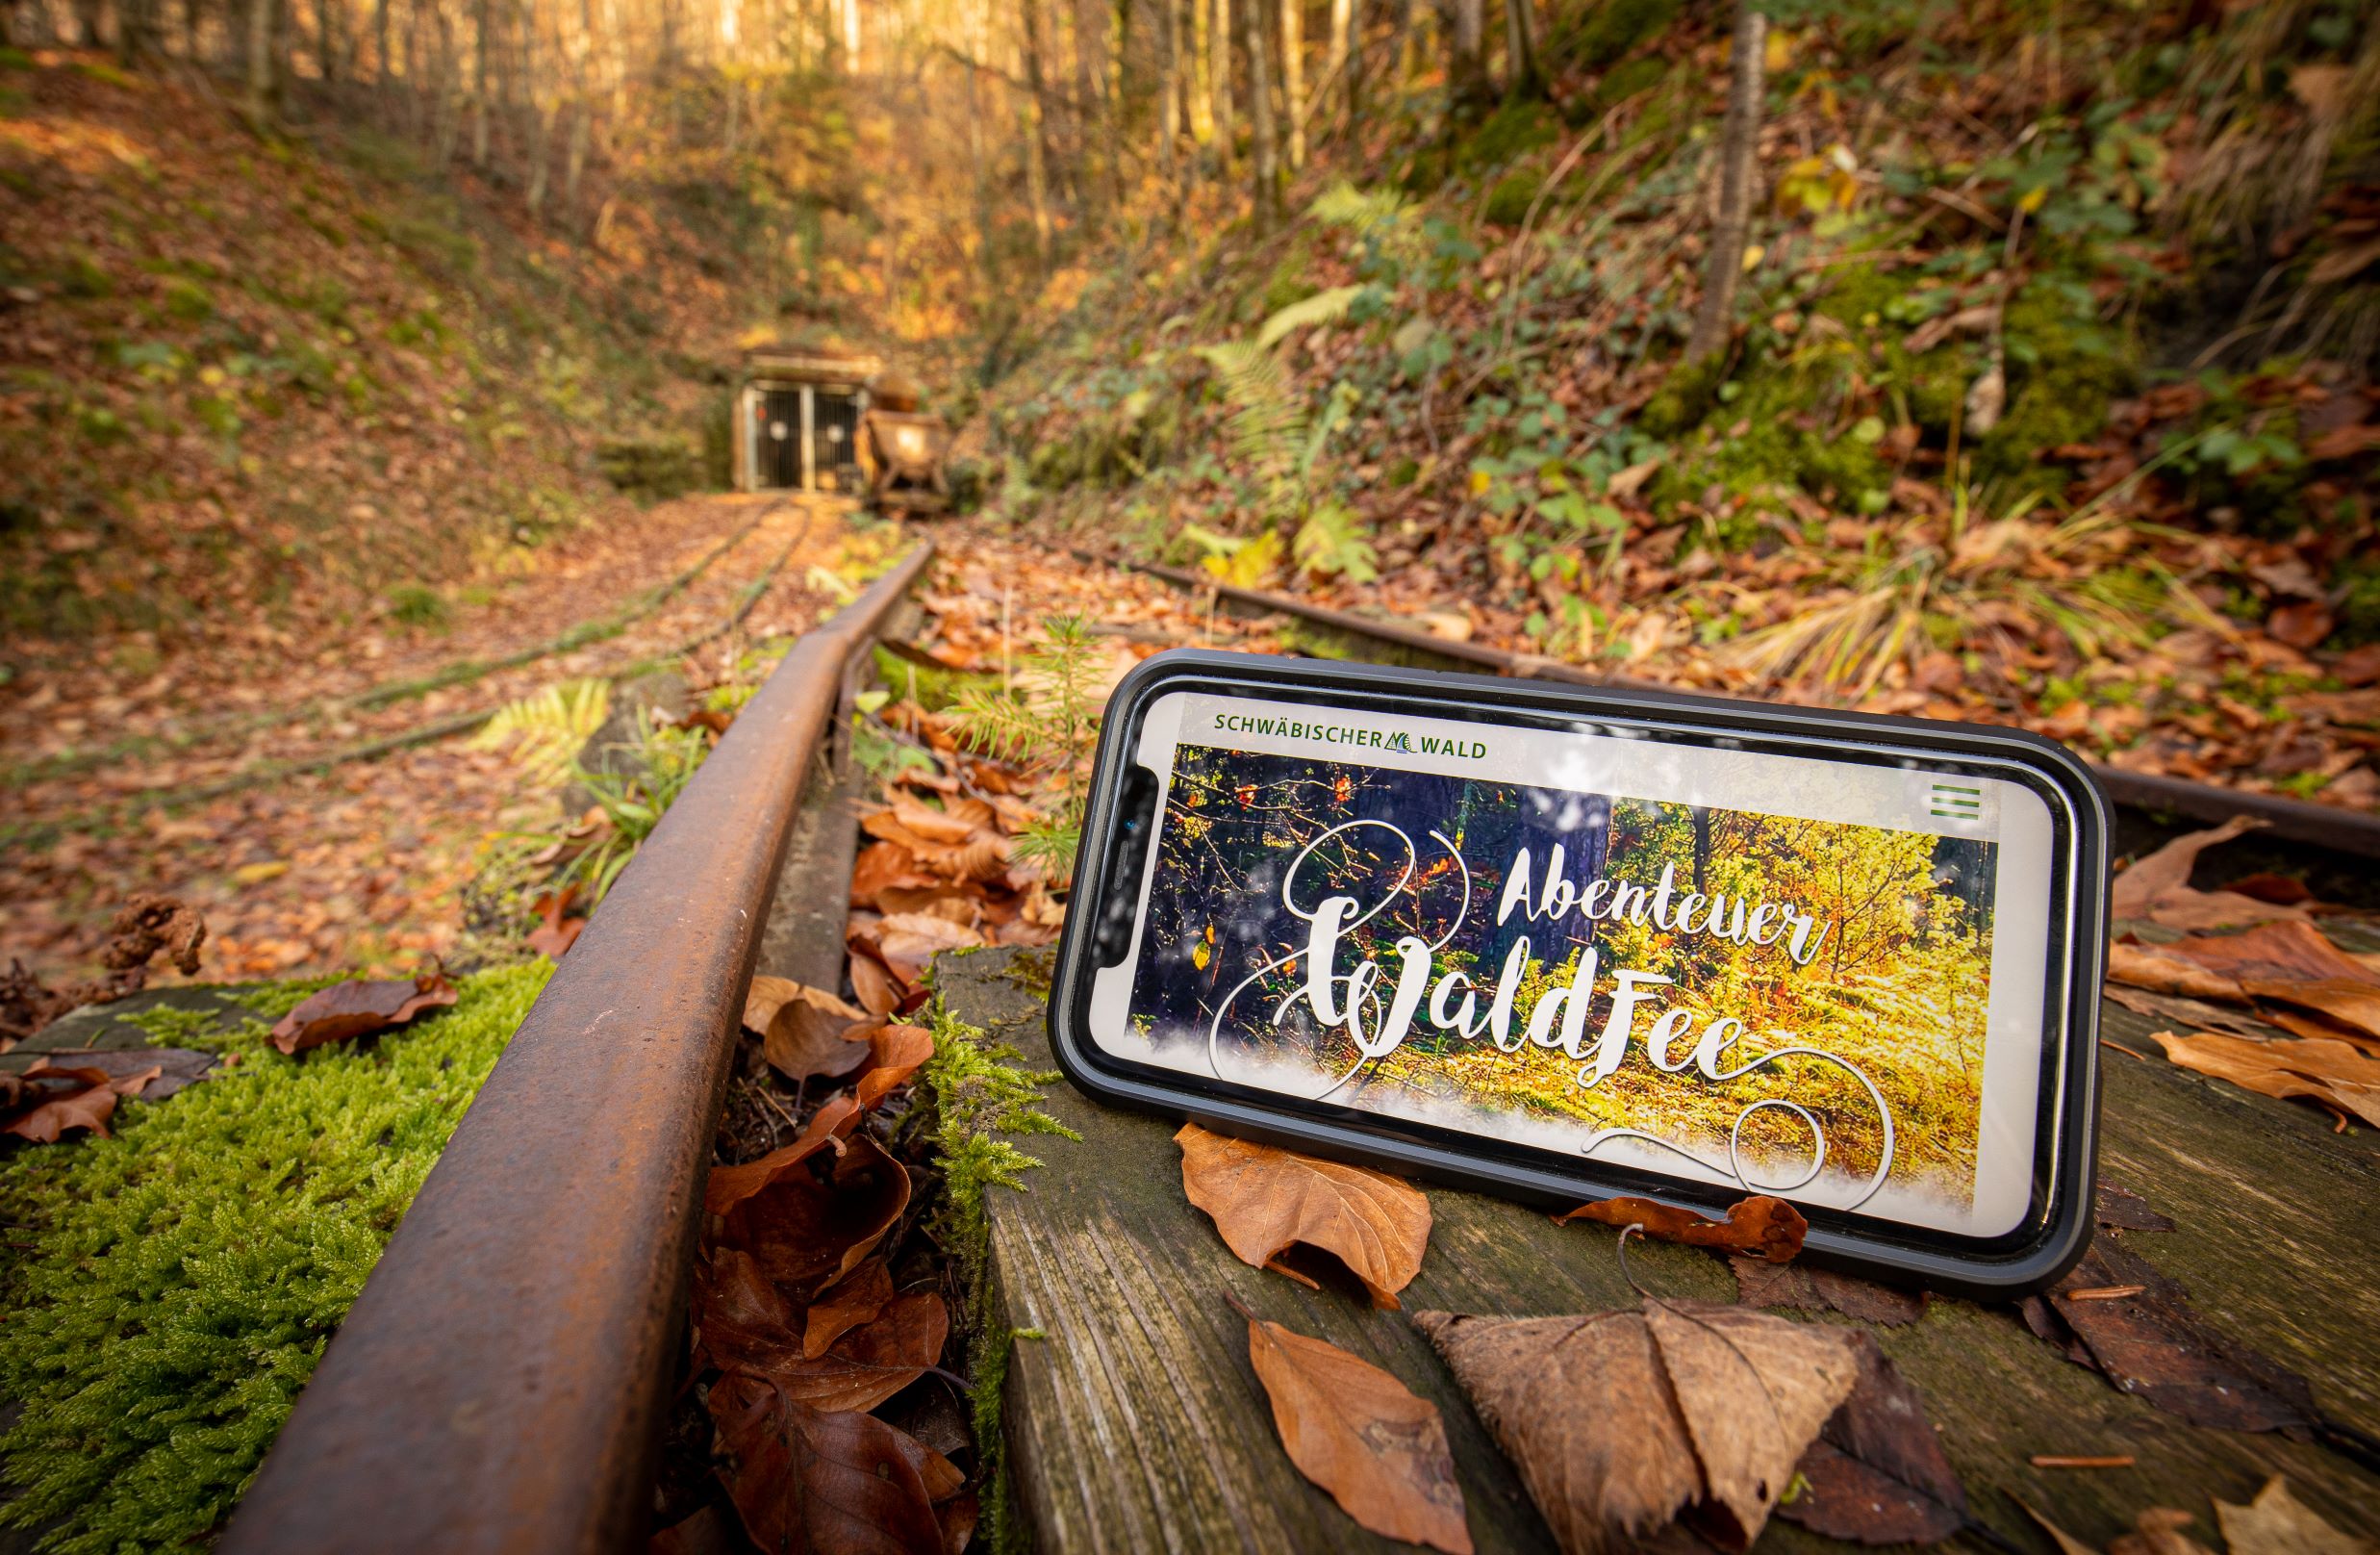  Smartphone im Wald mit der Abteneuer Waldfee App 